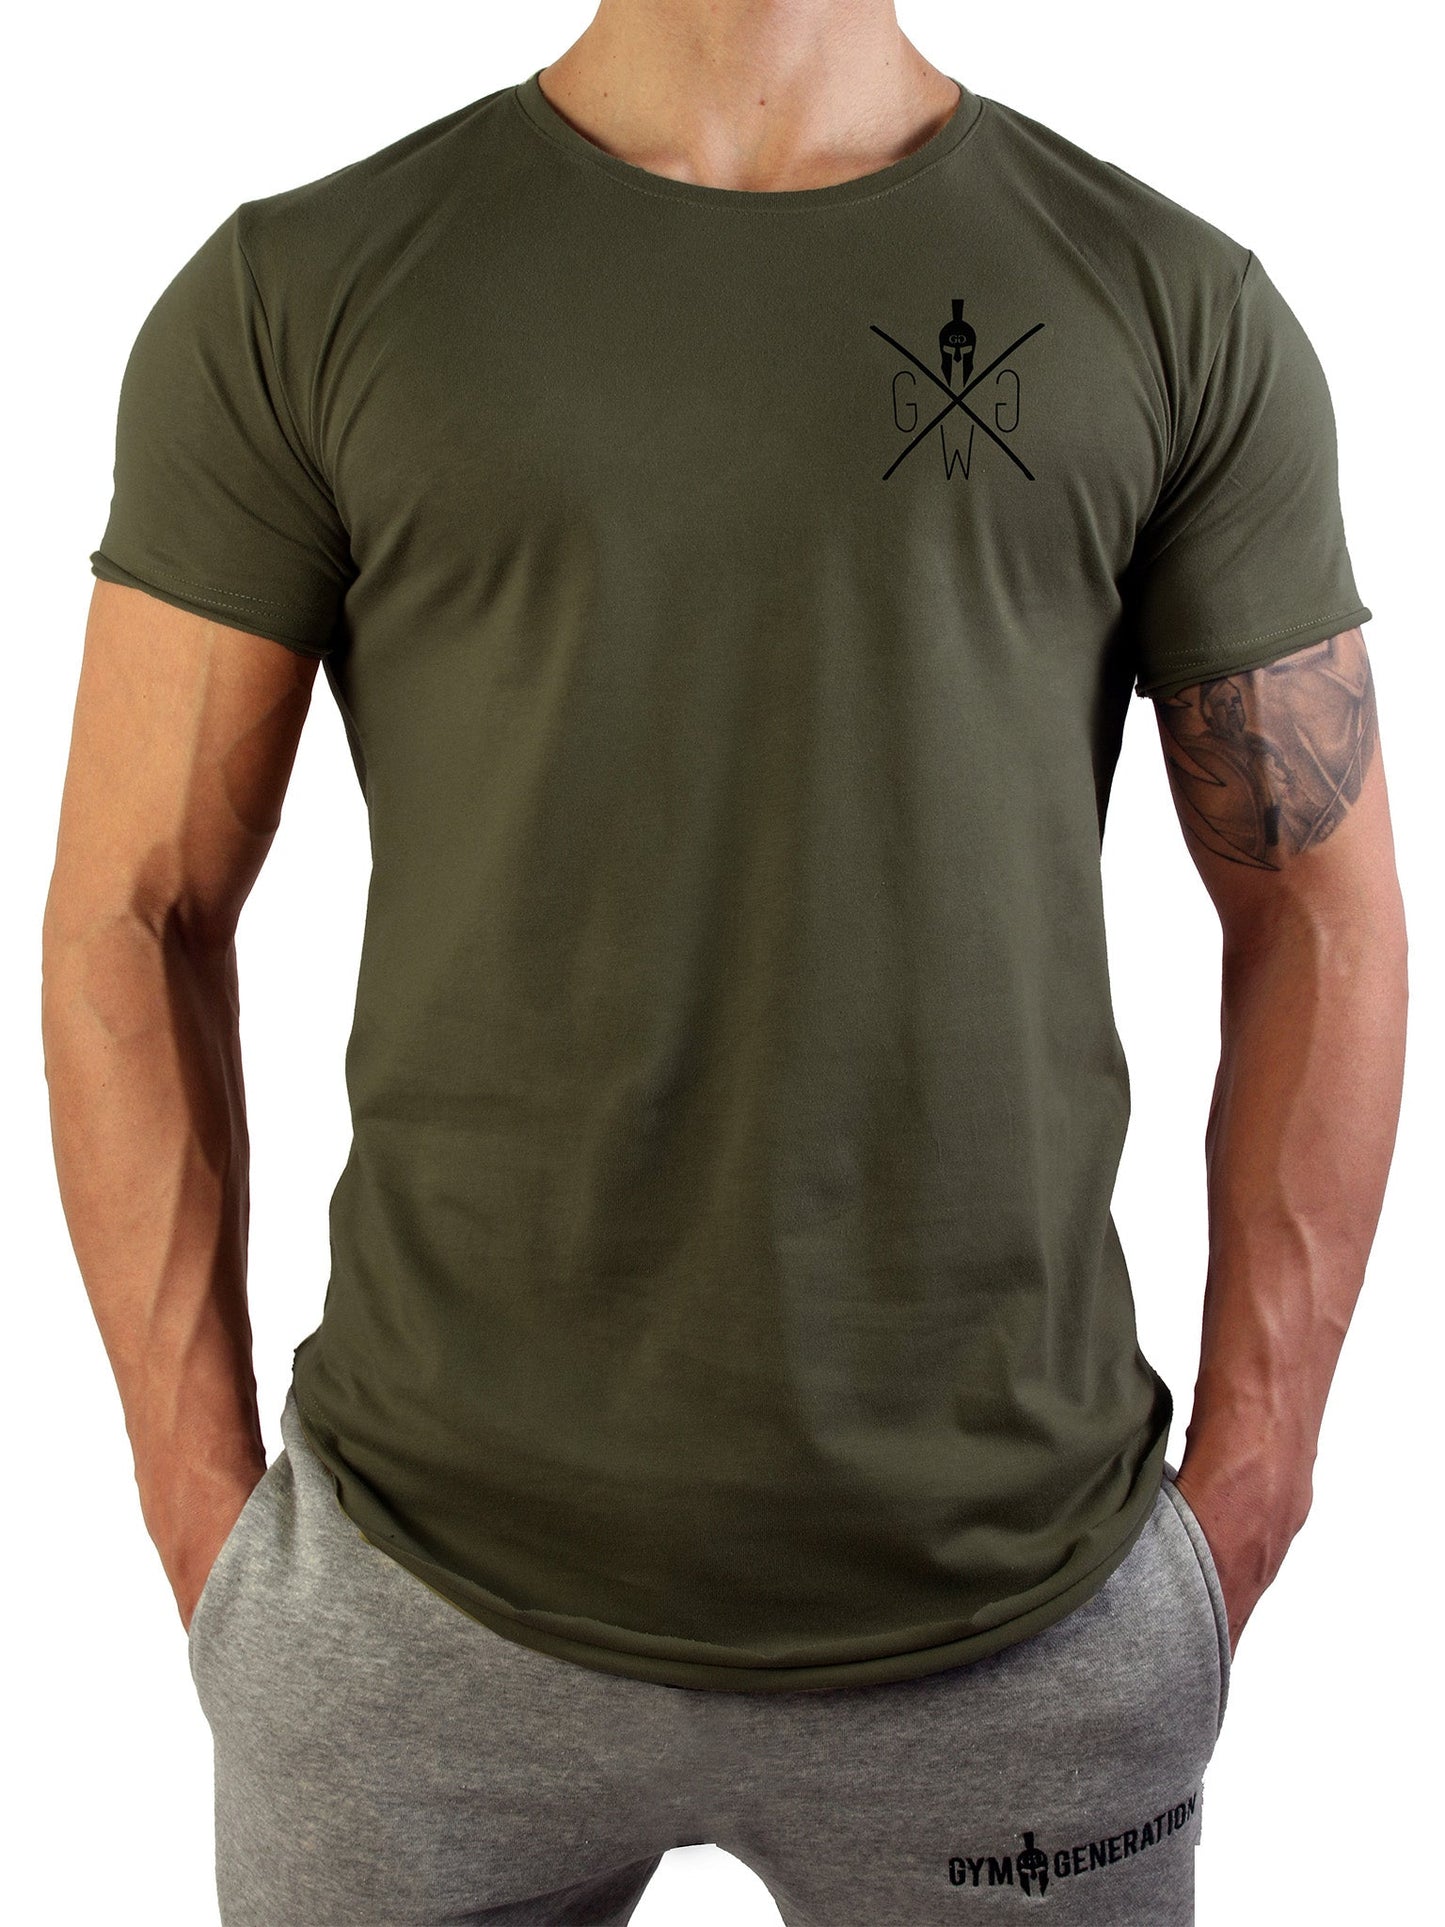 Gym Generation Warrior T-Shirt in Olivgrün mit gerollten Ärmeln und abgerundetem Saum für stilbewusste Männer.